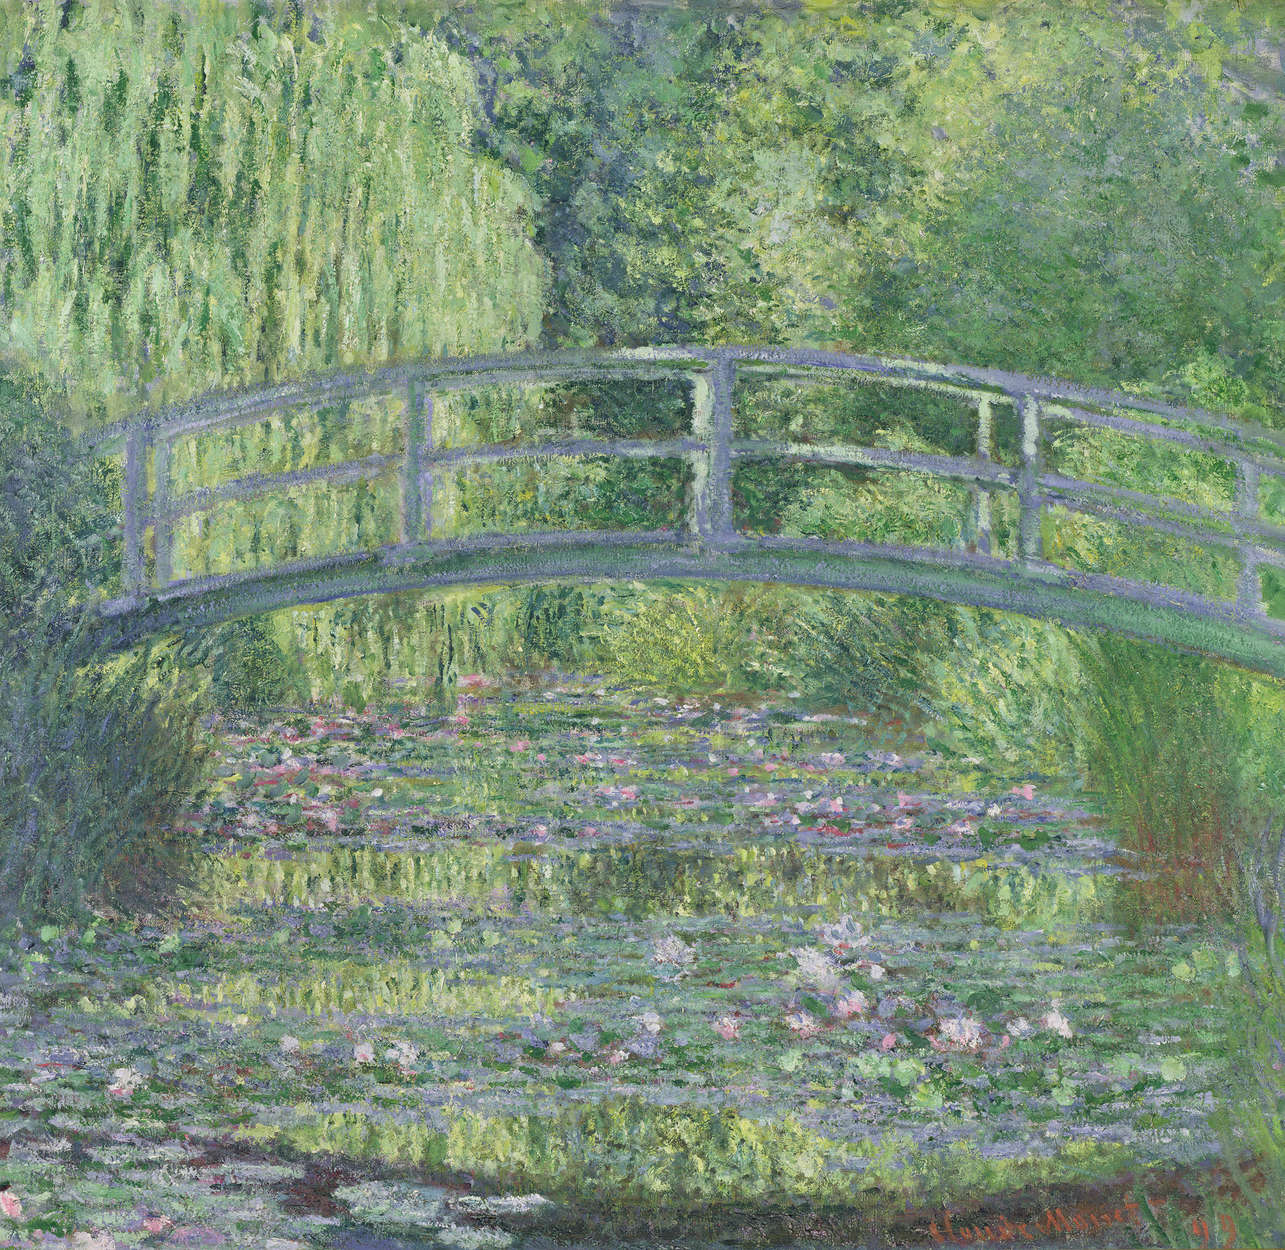             Papier peint "L'étang aux nénuphars : l'harmonie verte" de Claude Monet
        